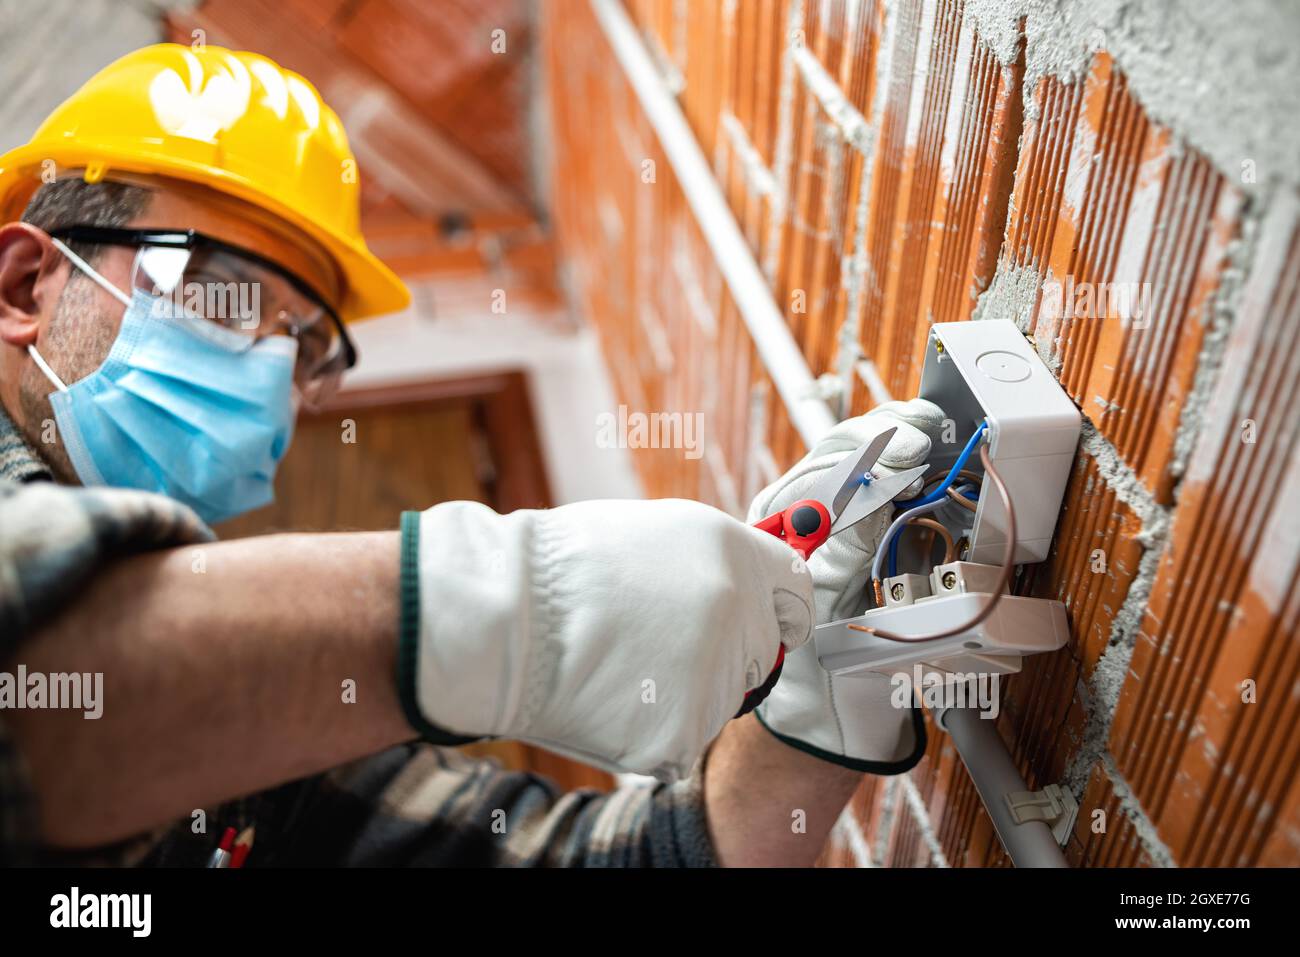 Elektriker Arbeiter mit Schere bereitet die elektrischen Kabel eines elektrischen Systems; tragen Sie die chirurgische Maske, um die Ausbreitung von Coronavirus zu verhindern. Stockfoto